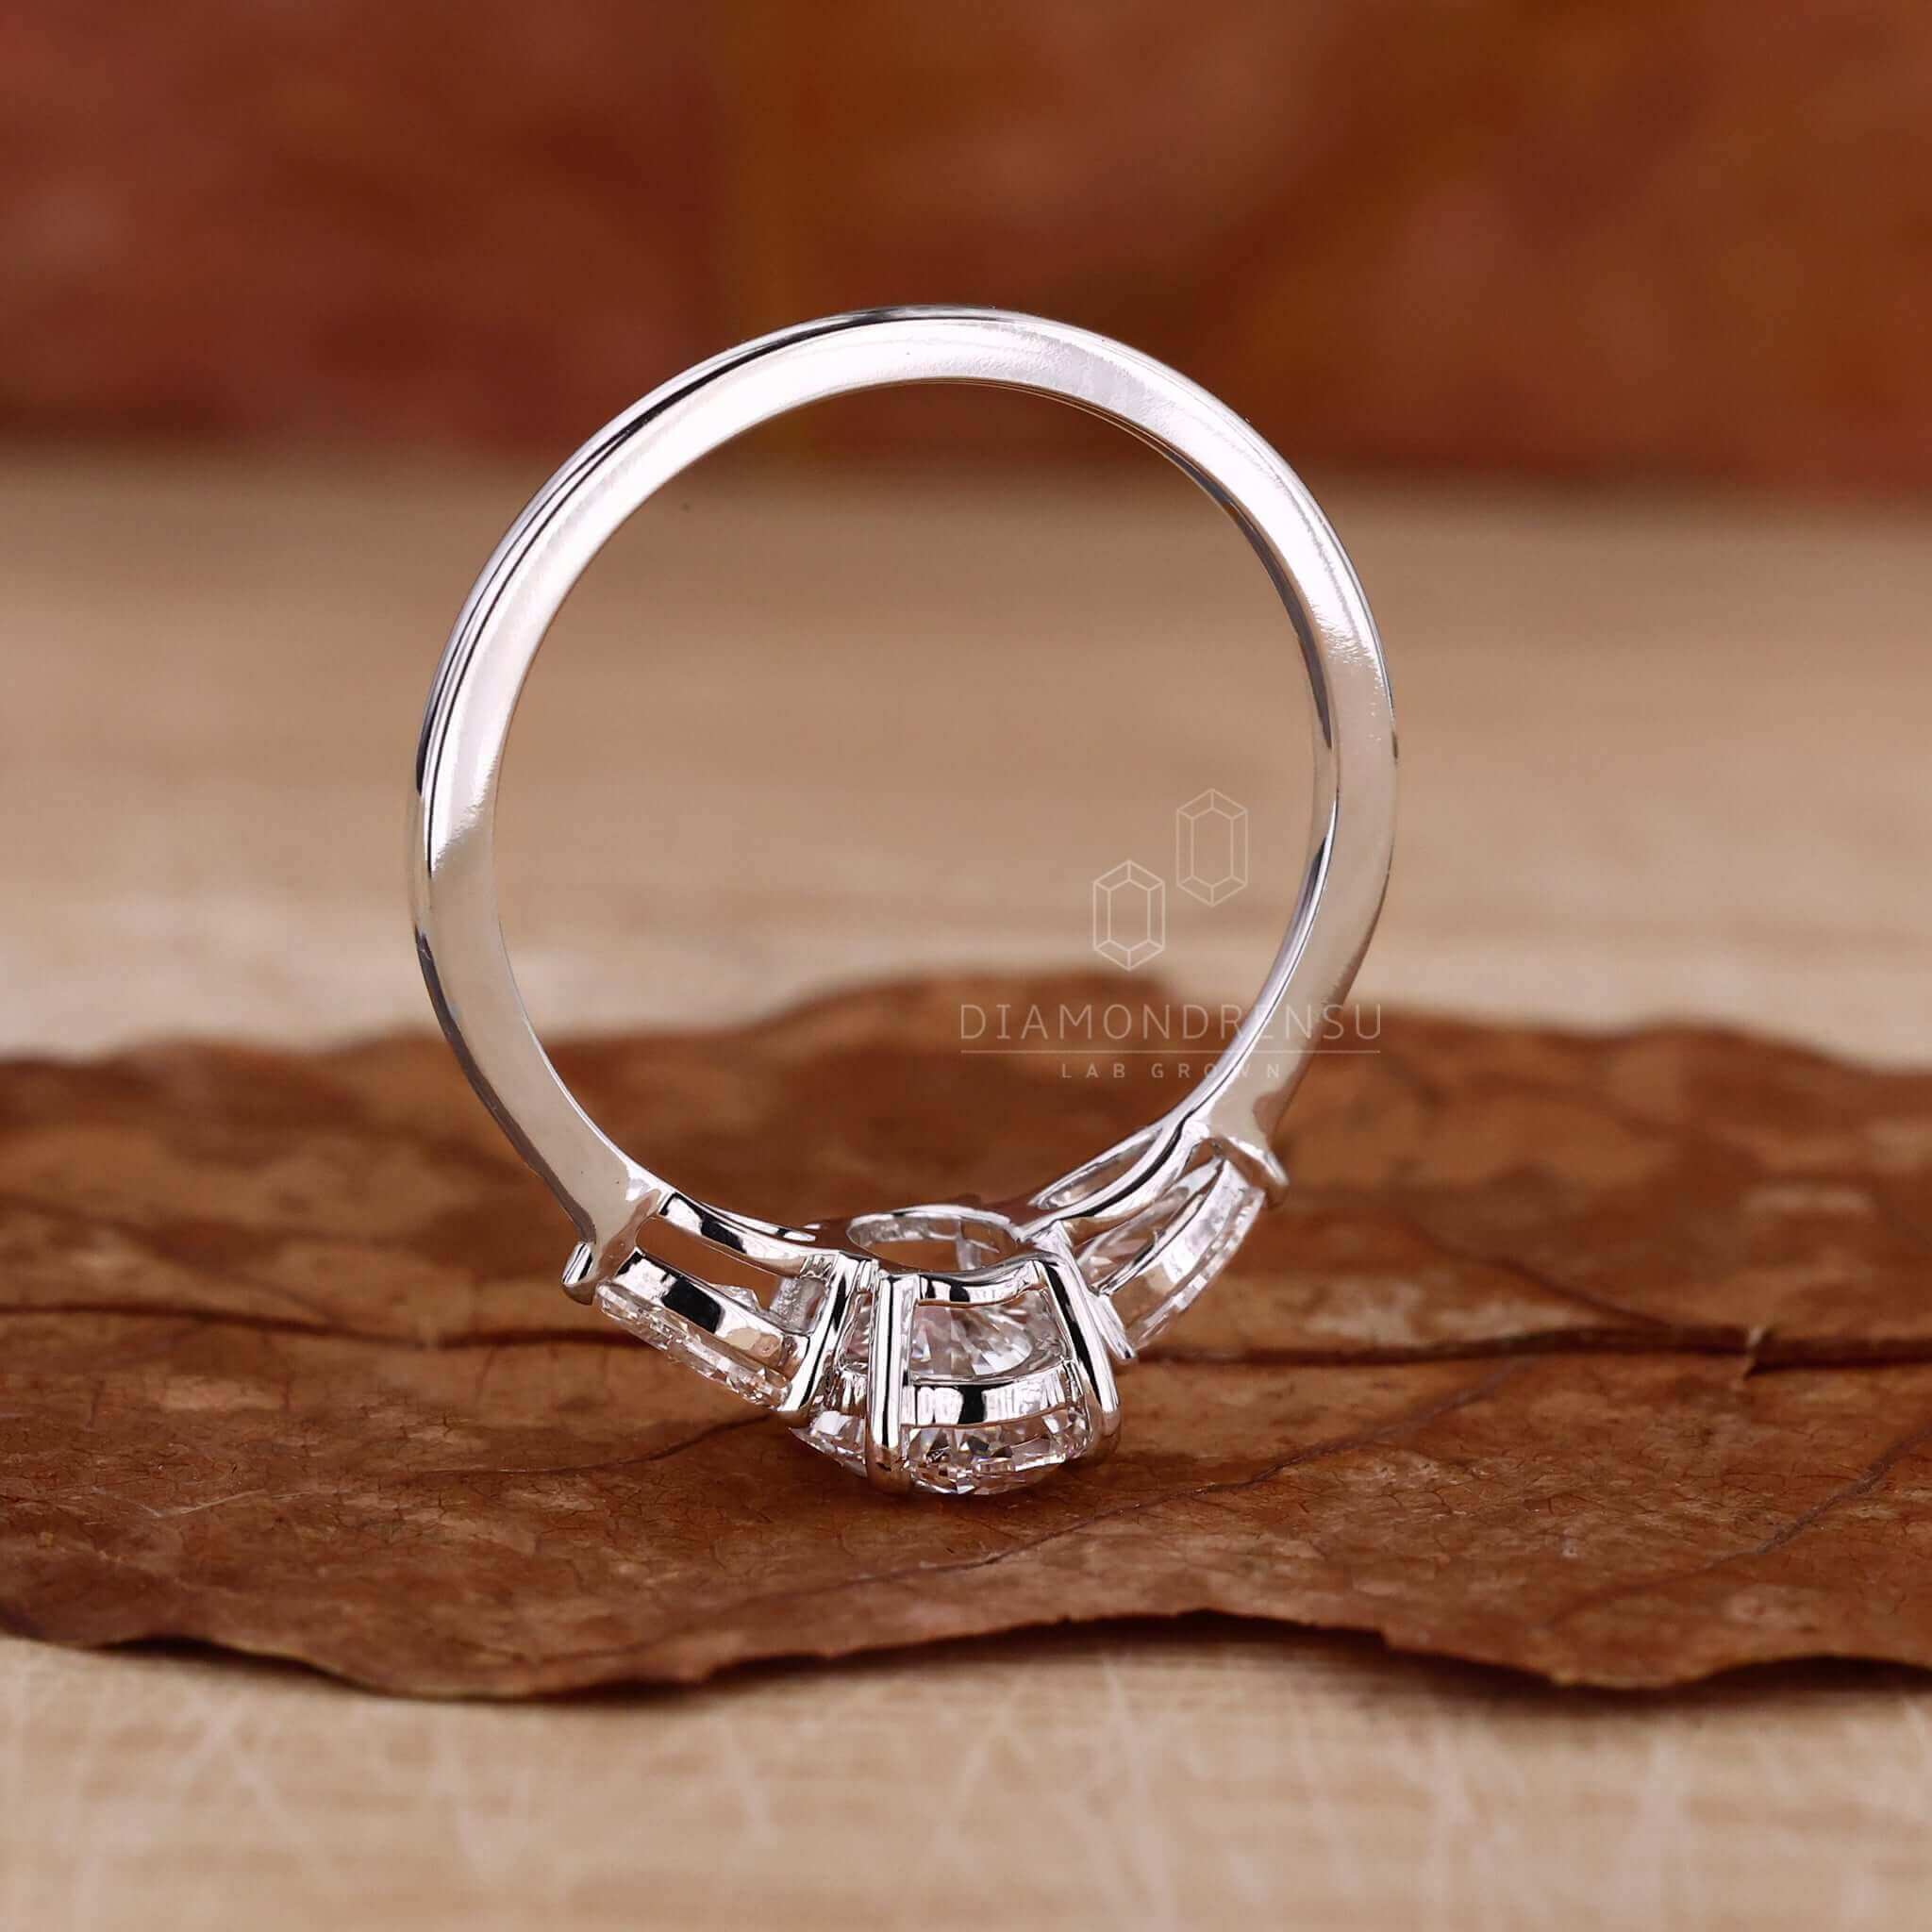 igi certified diamond rings